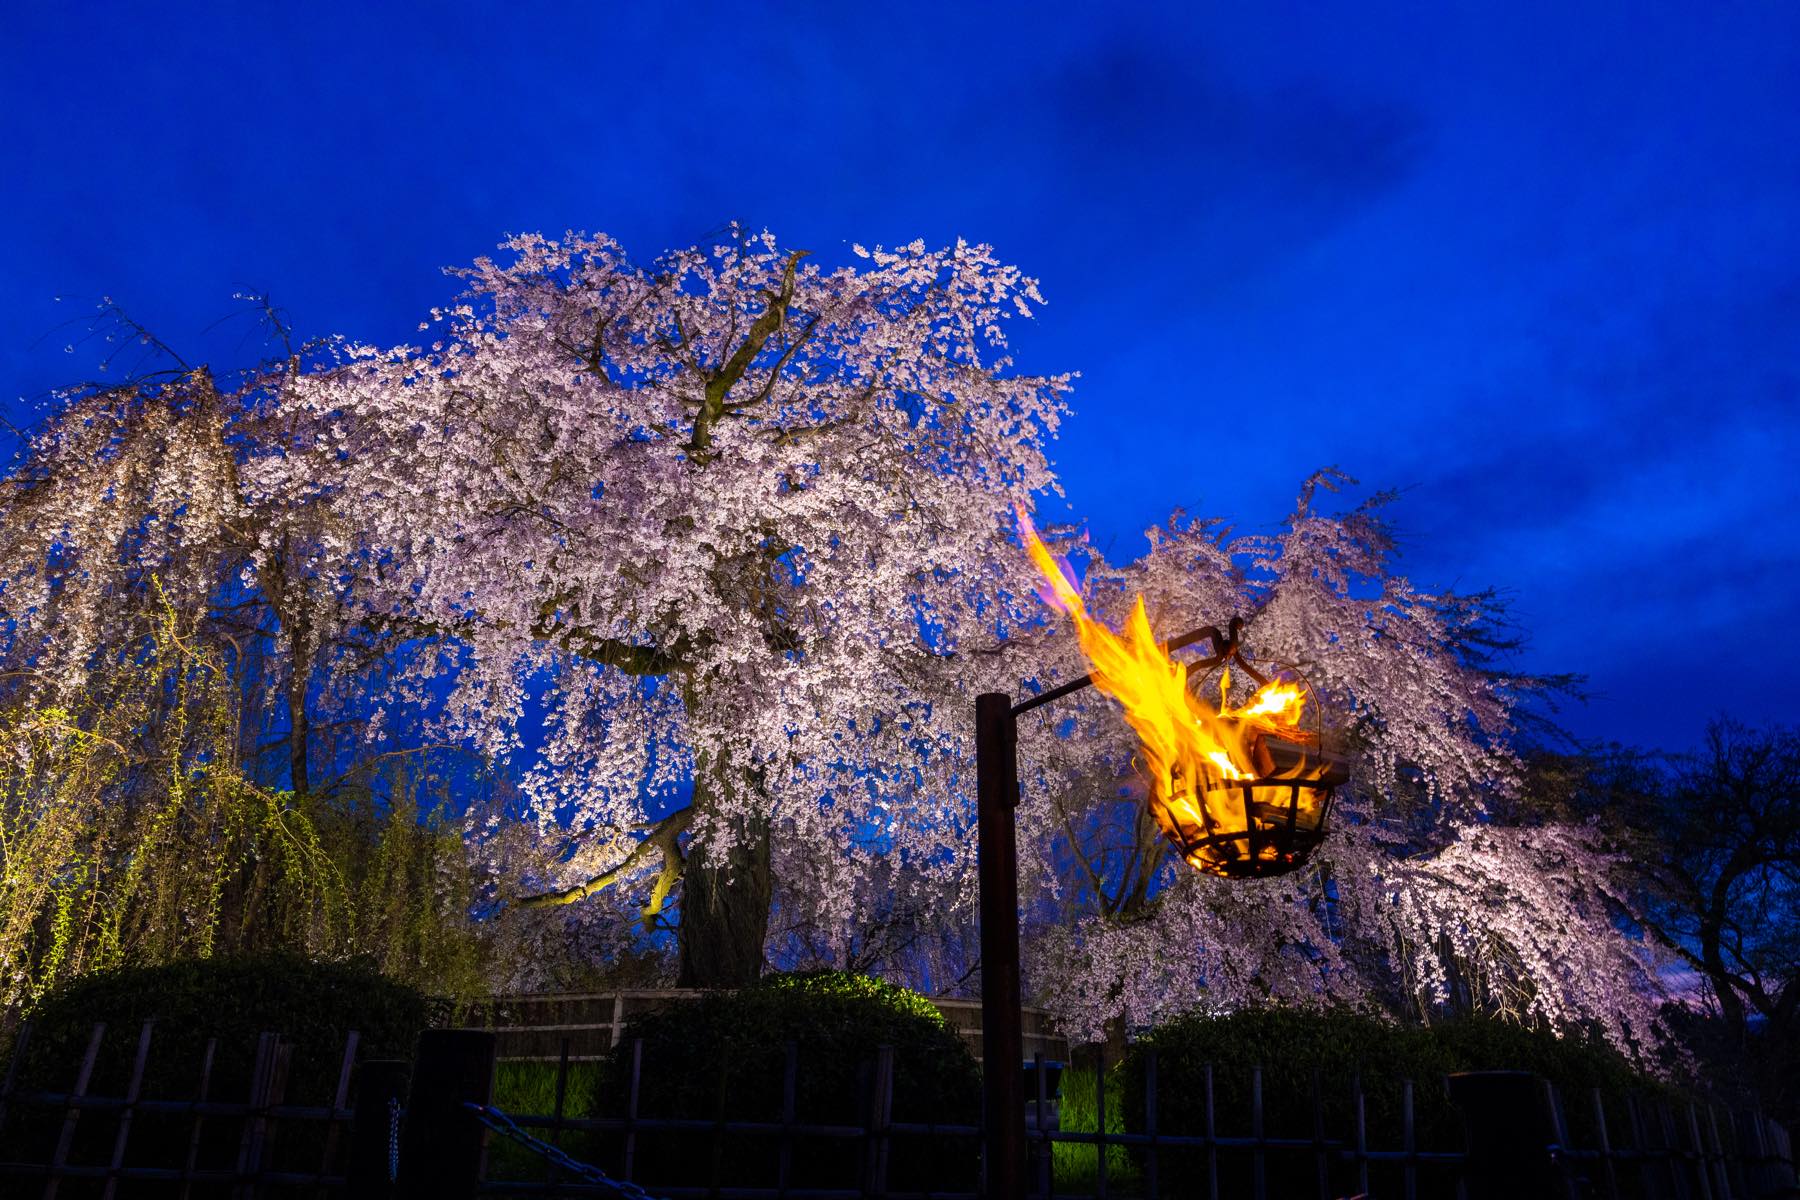 約700本の桜が咲く「円山公園」の中央に位置するのが、「祇園の夜桜」としても有名な枝垂桜。樹齢220年で枯死した初代の種子から育てられた二代目も、100年近くの歳月を経て、見事な枝ぶりを見せる名木となった。